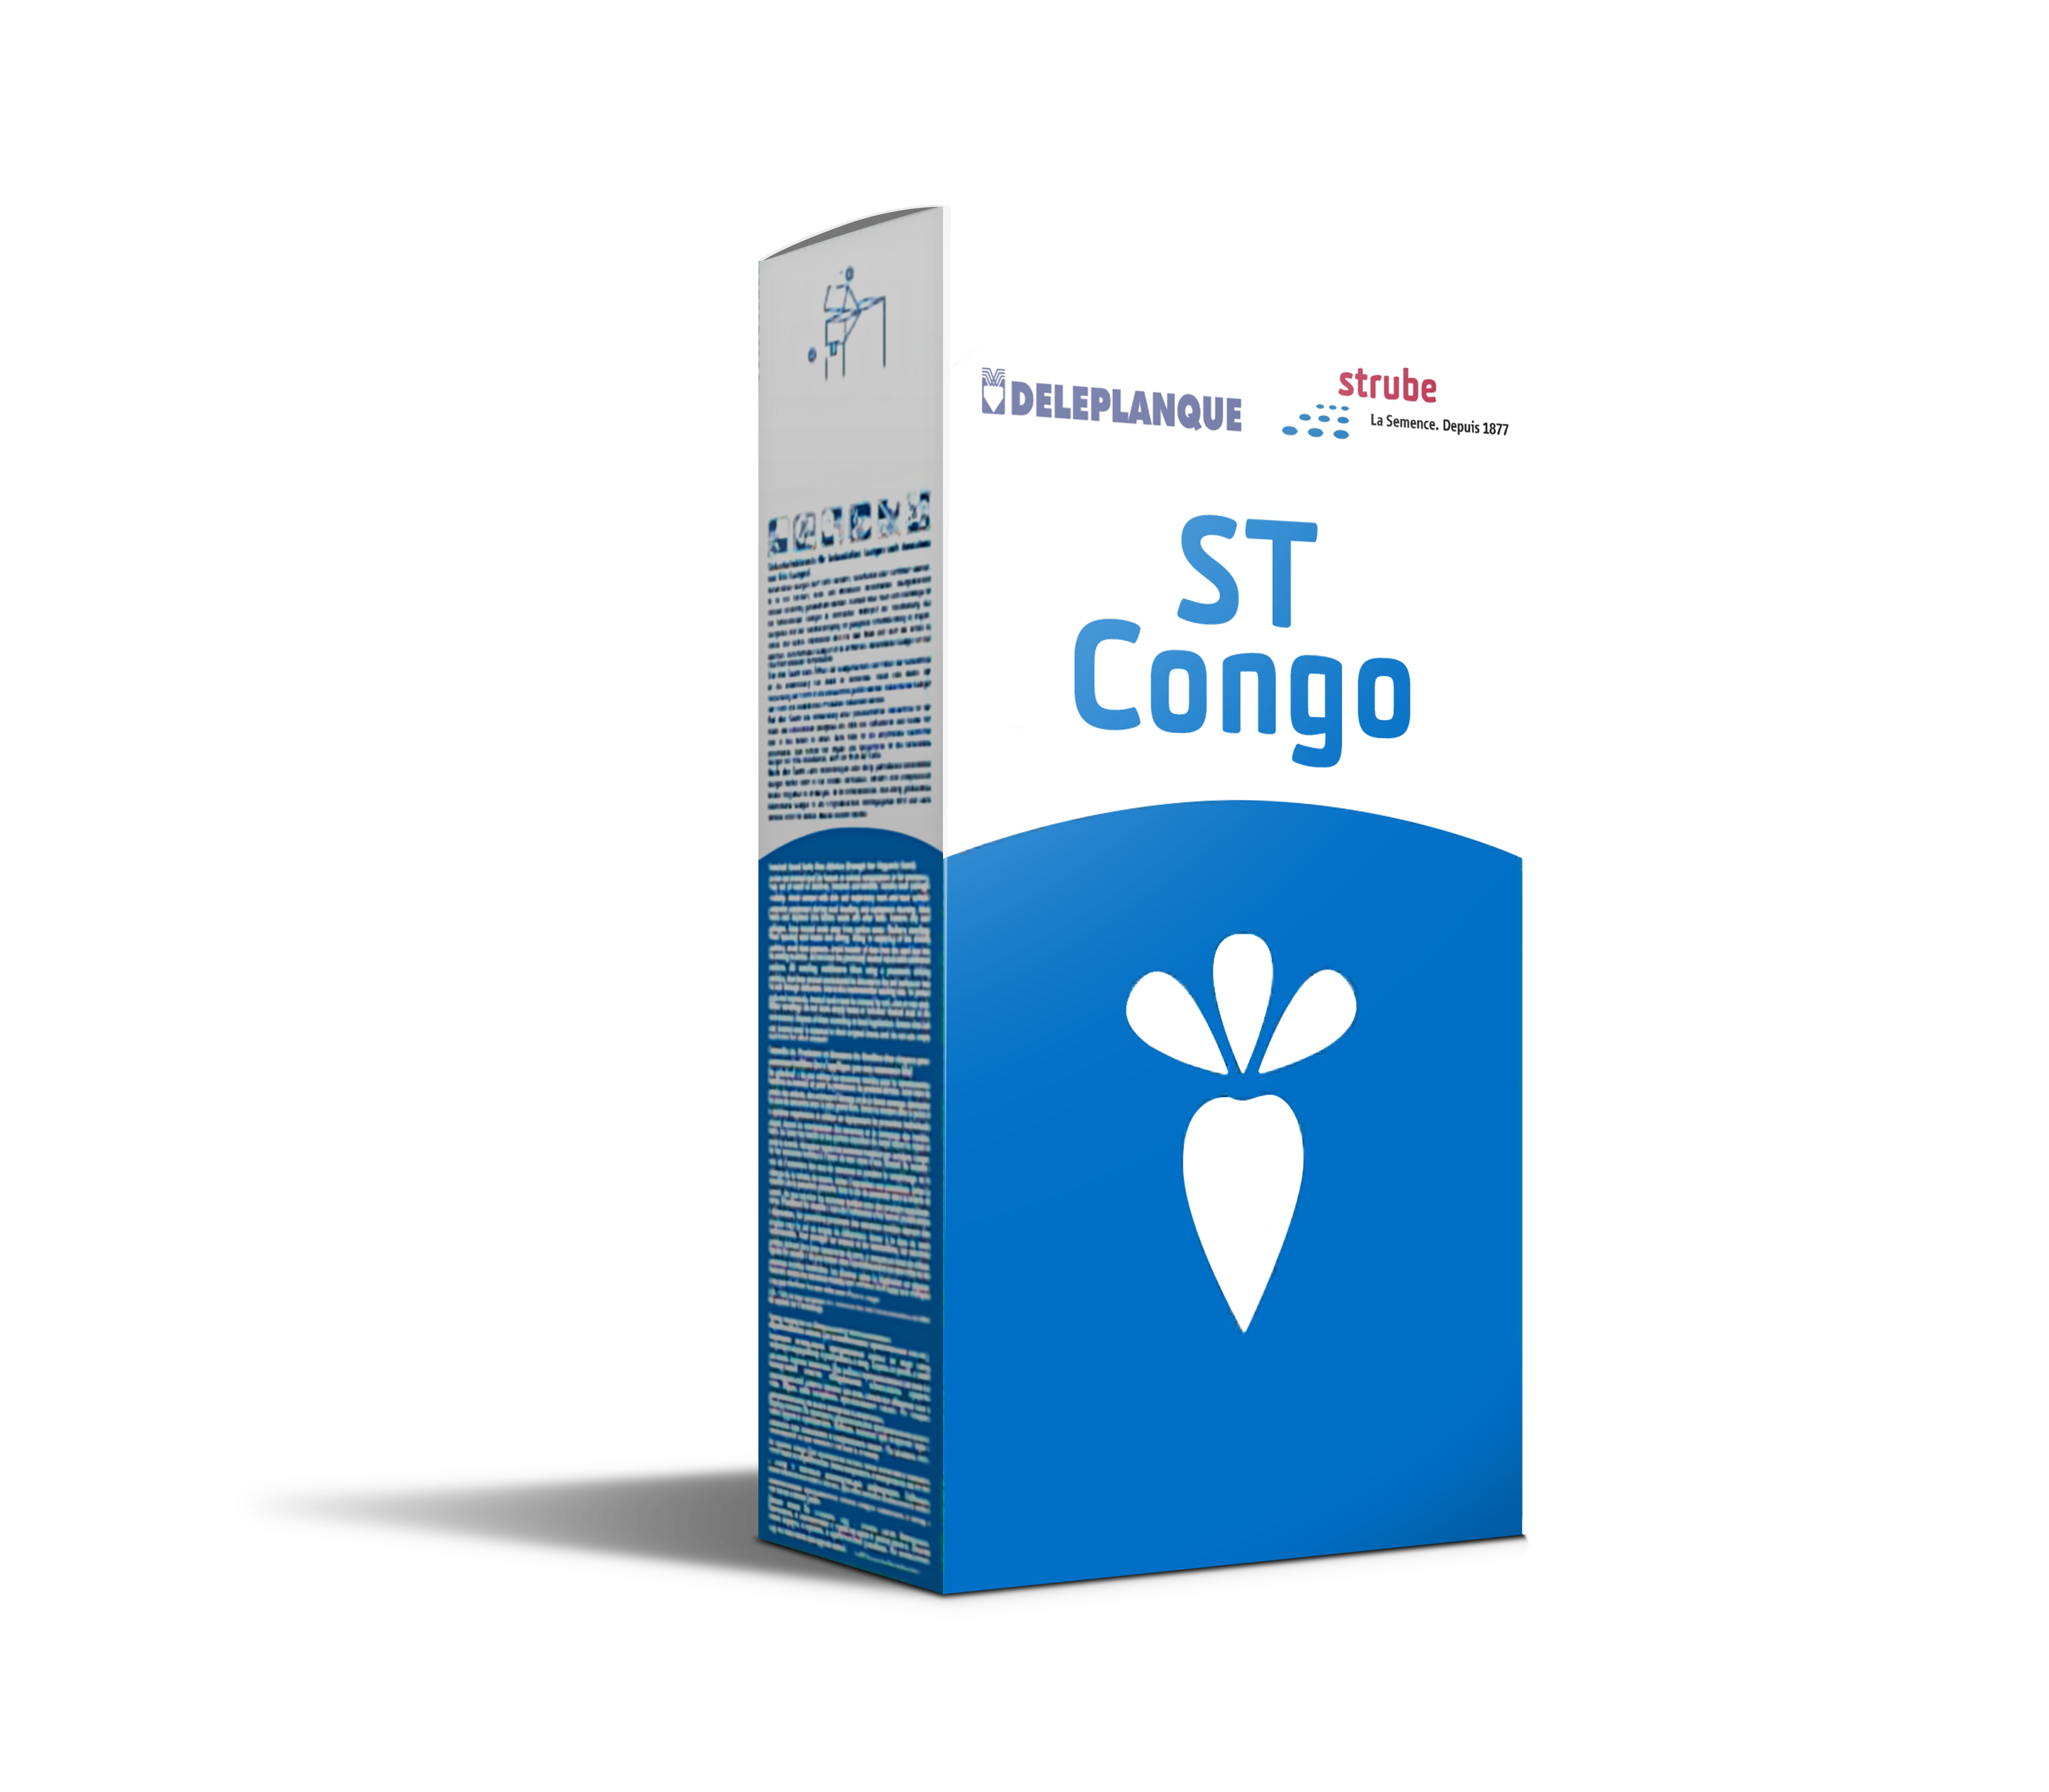 ST Congo